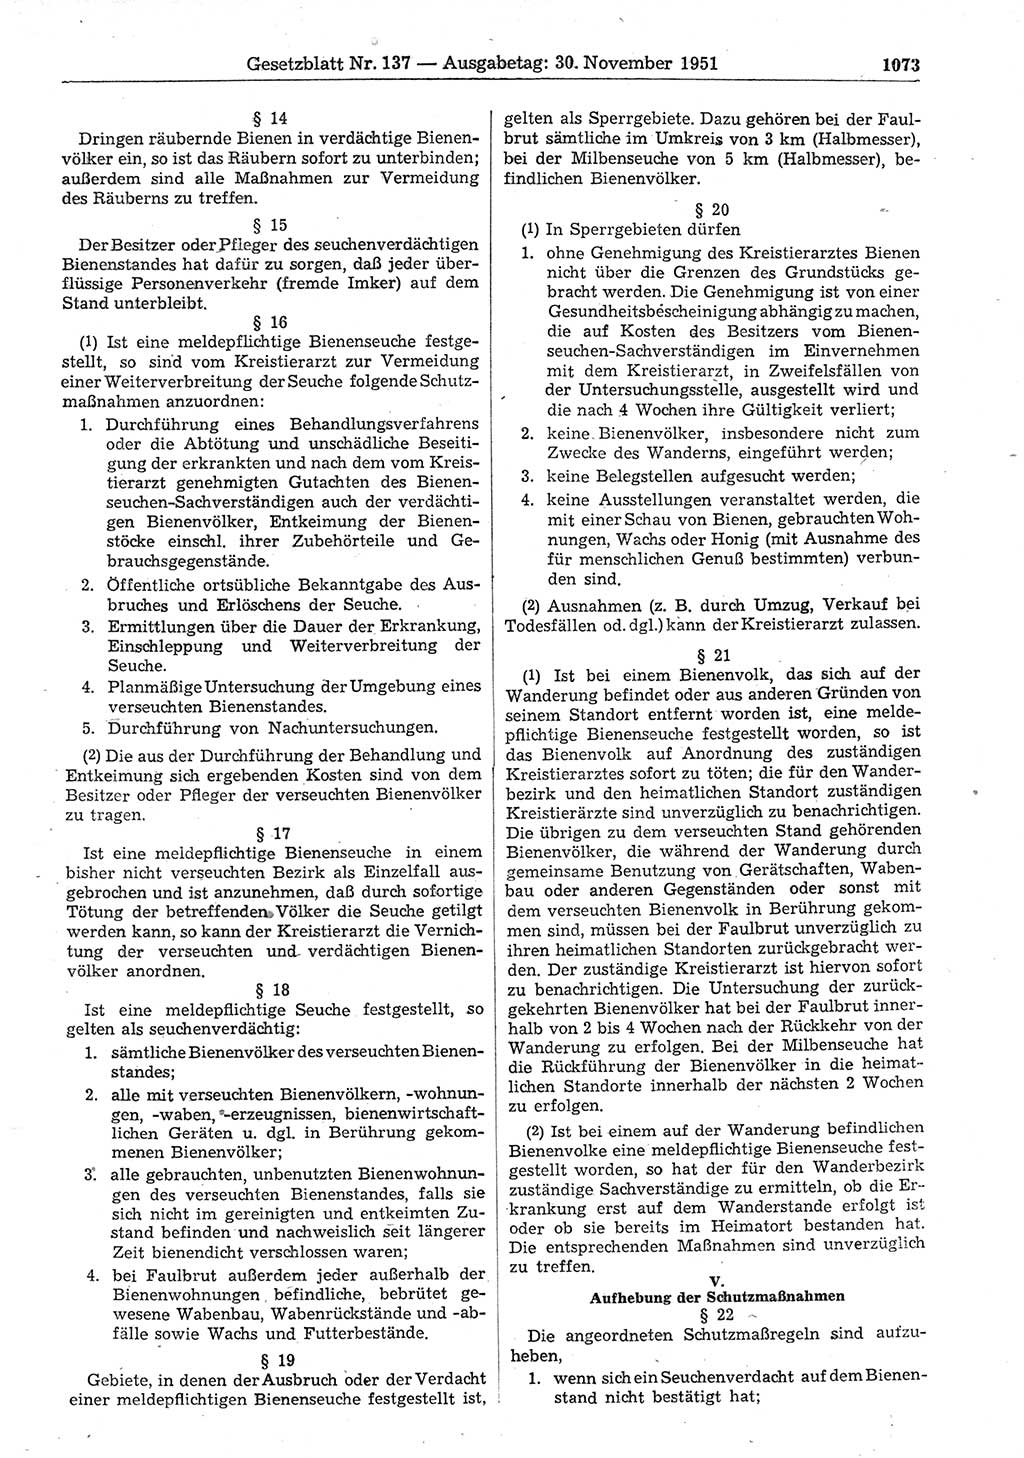 Gesetzblatt (GBl.) der Deutschen Demokratischen Republik (DDR) 1951, Seite 1073 (GBl. DDR 1951, S. 1073)